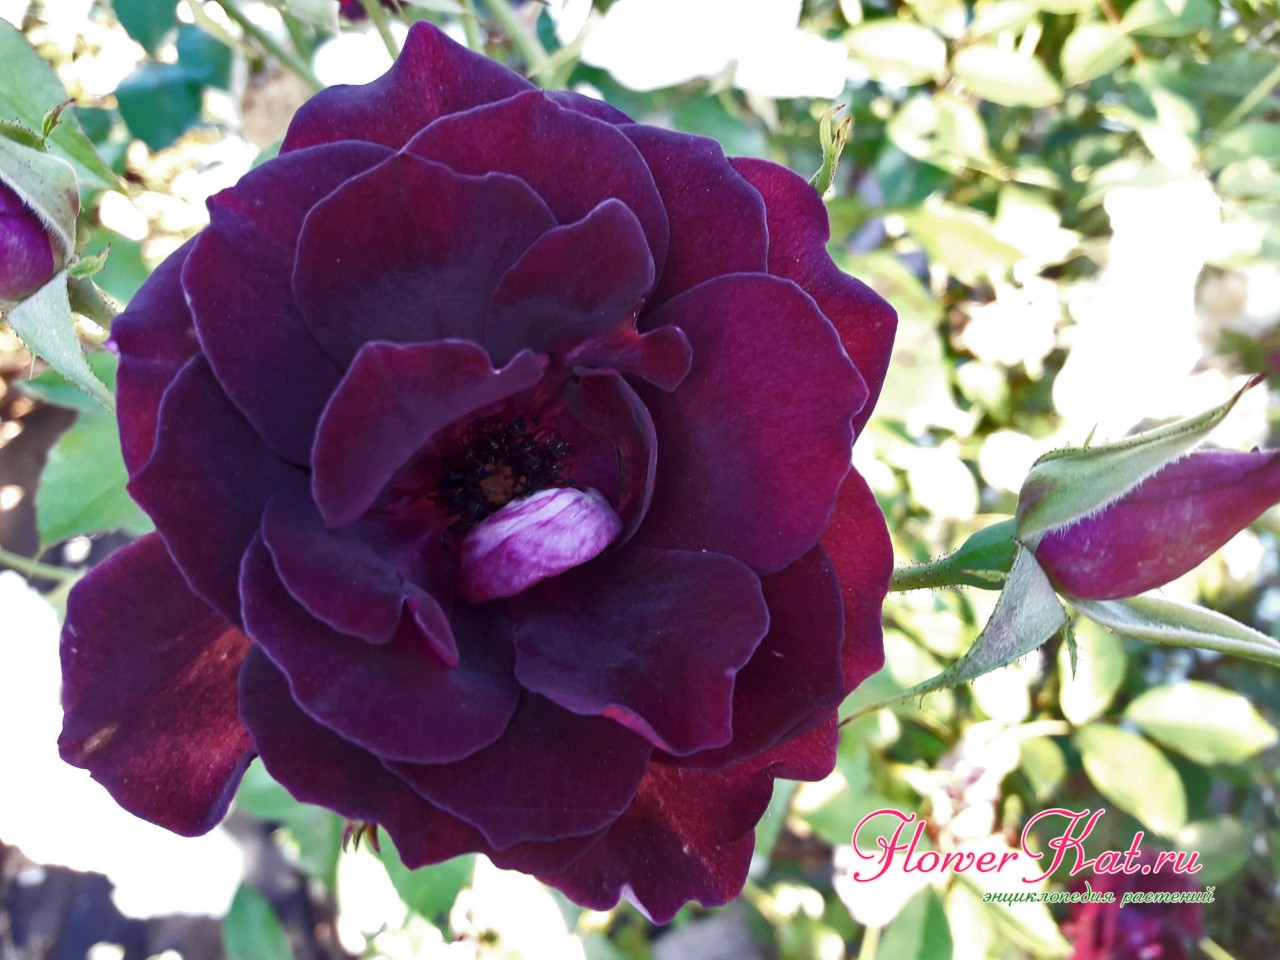 Изменение окраски на бордовую у розы Бургунда Айс - фото